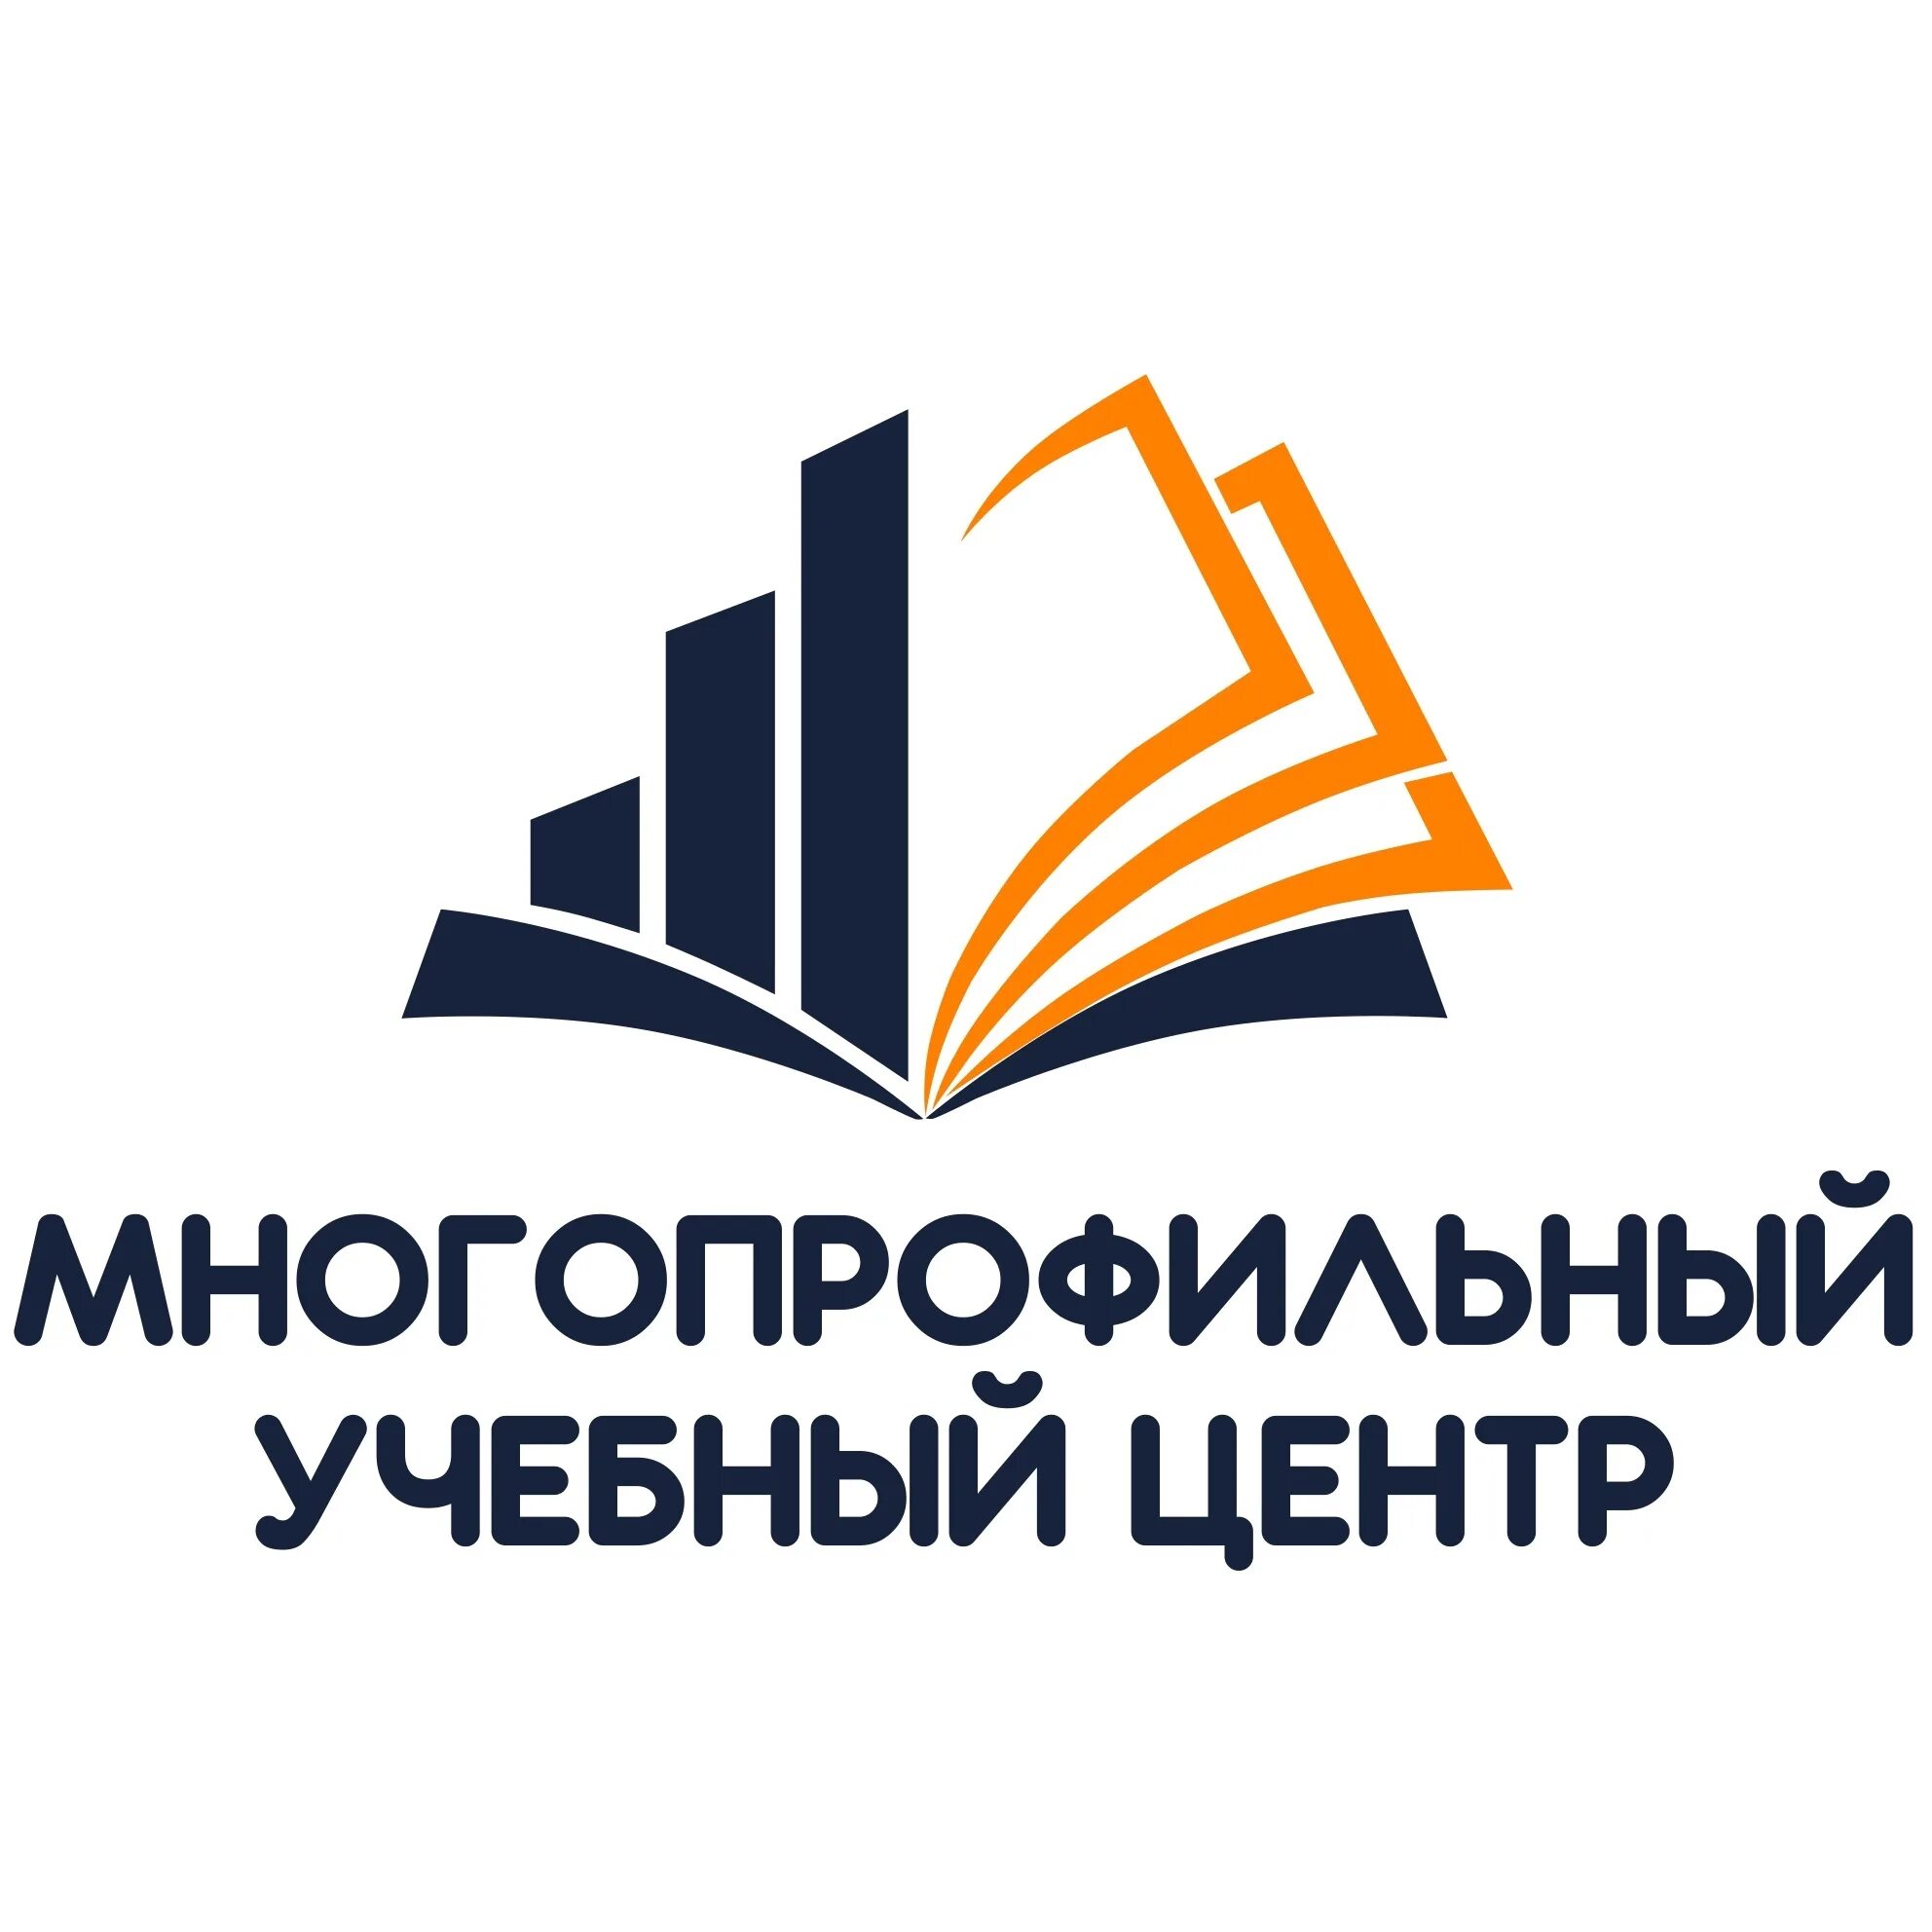 Многопрофильный учебный центр. Многопрофильный учебный центр Ижевск. ООО многопрофильный учебный центр. Логотипы многопрофильных учебных центров.